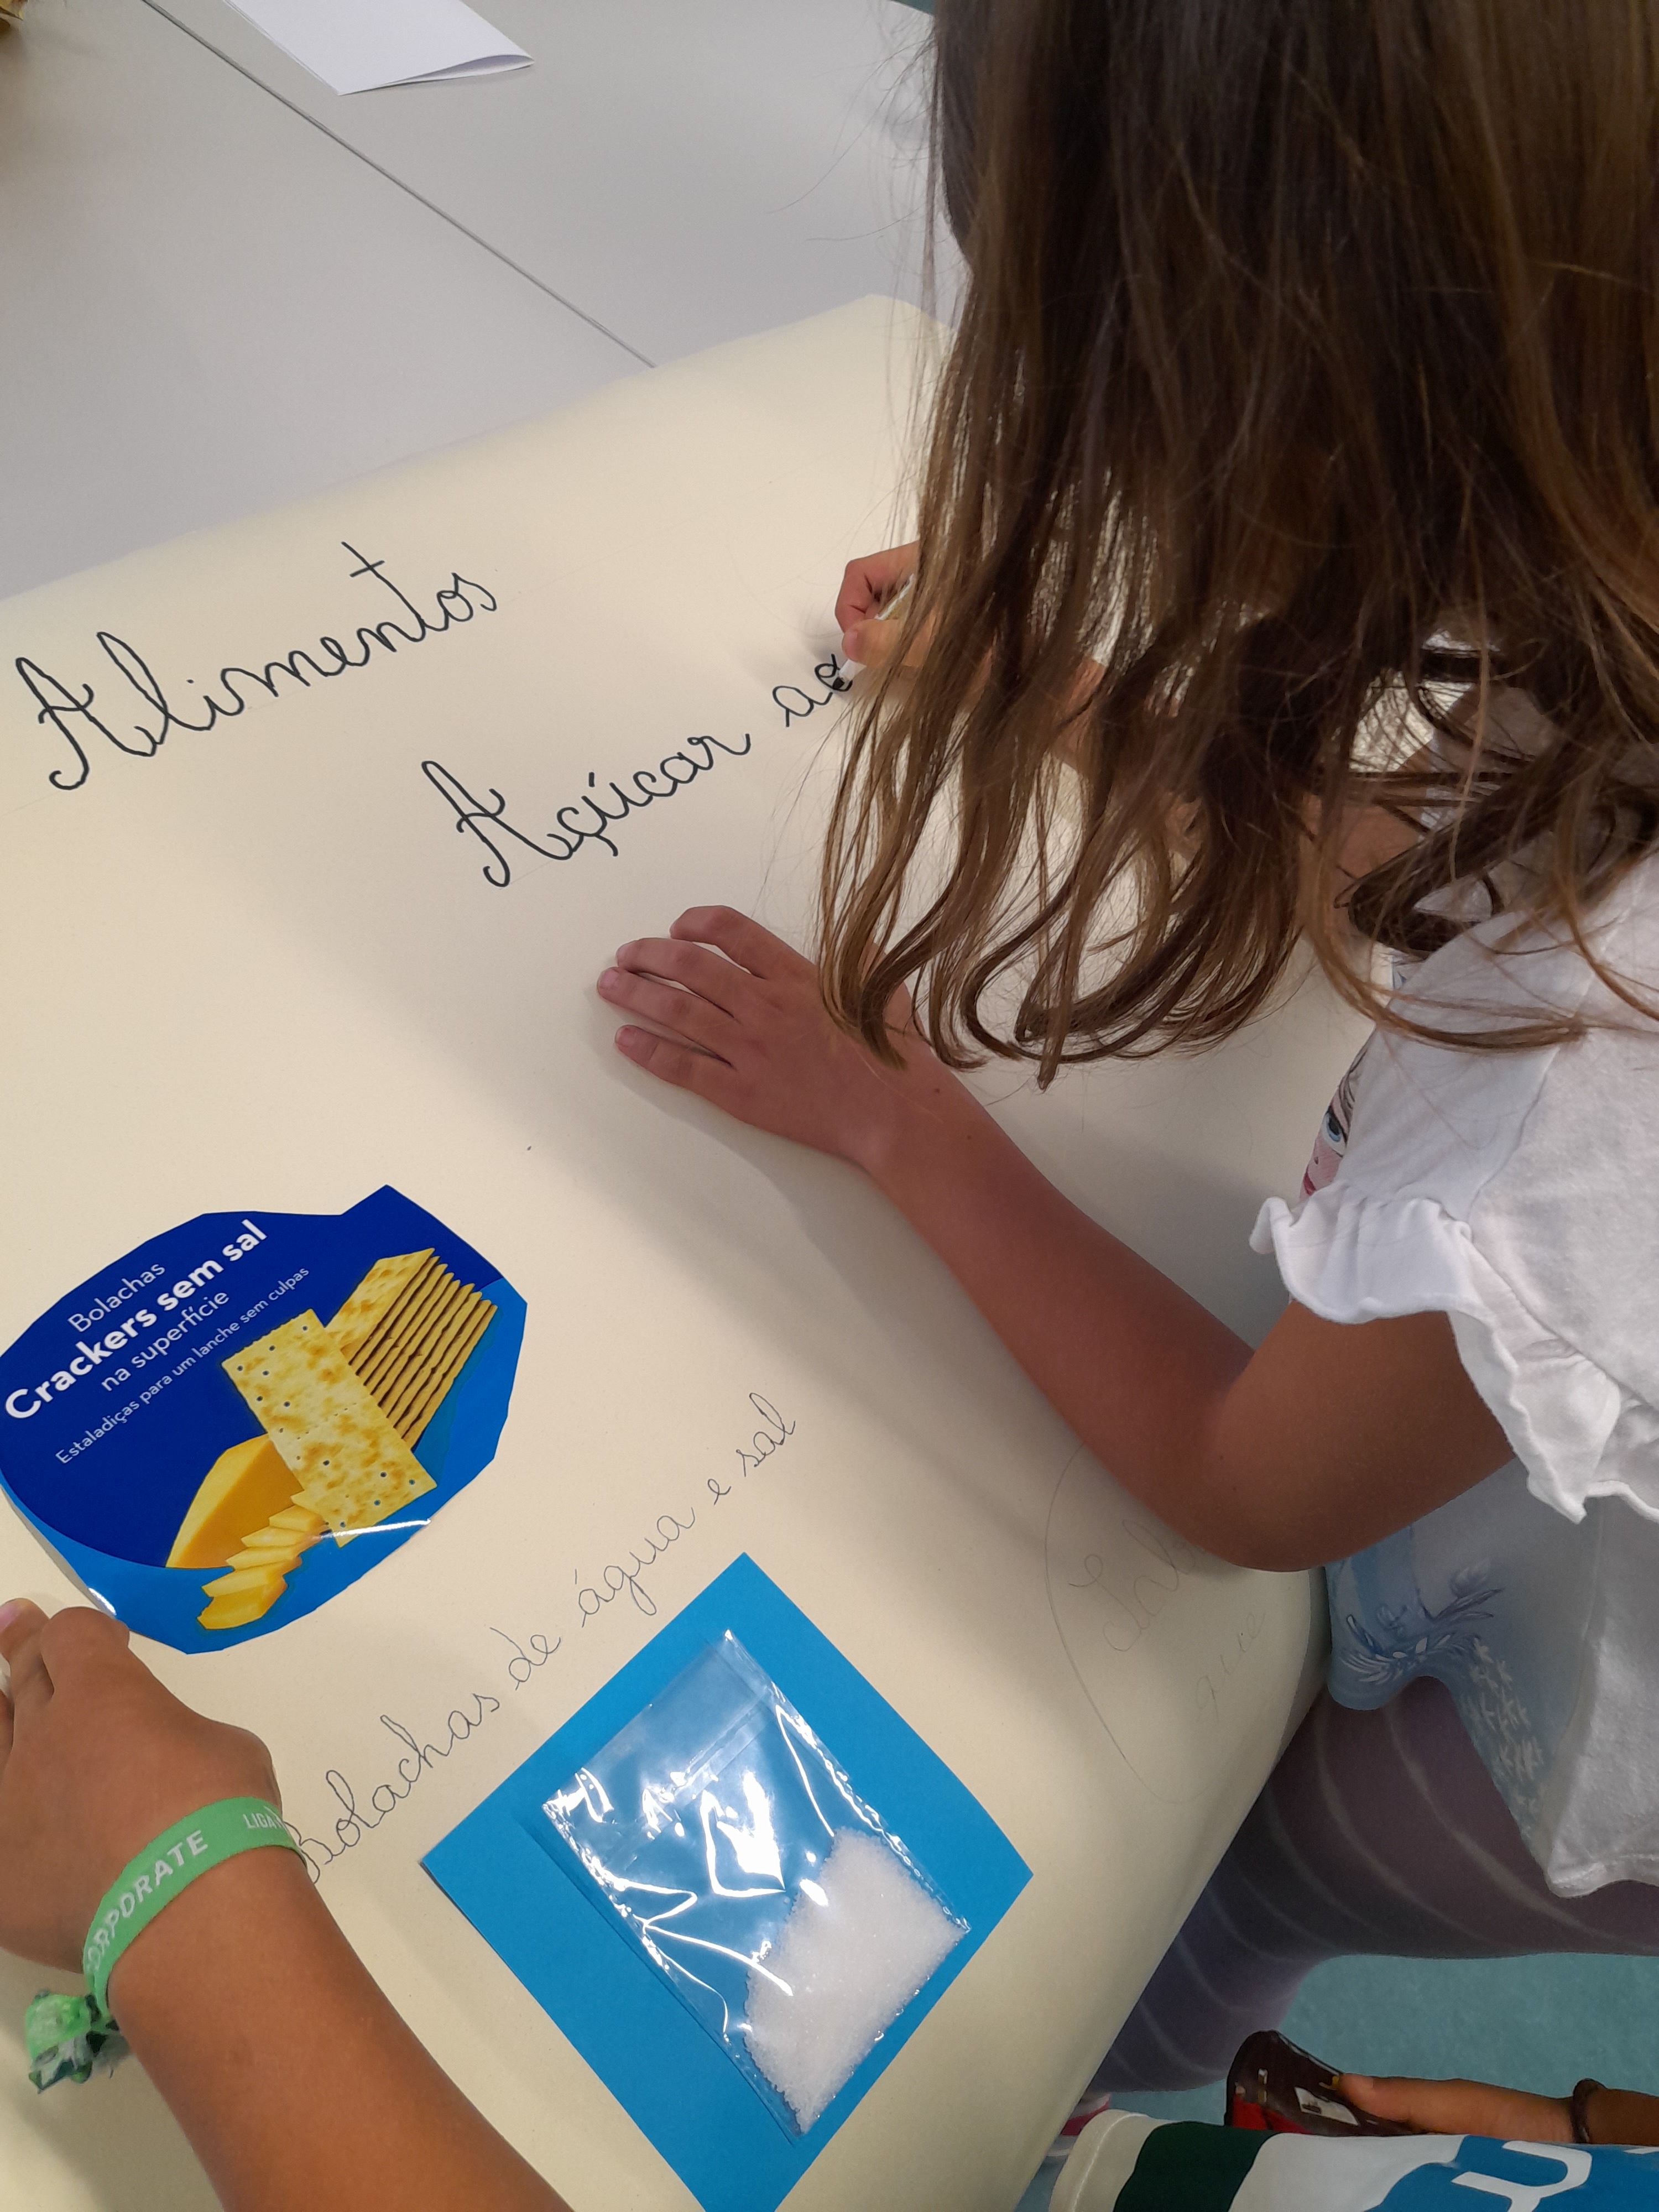 Os alunos escreveram o título do painel em letras manuscritas de grandes dimensões e com marcador grosso, de modo a destacar.